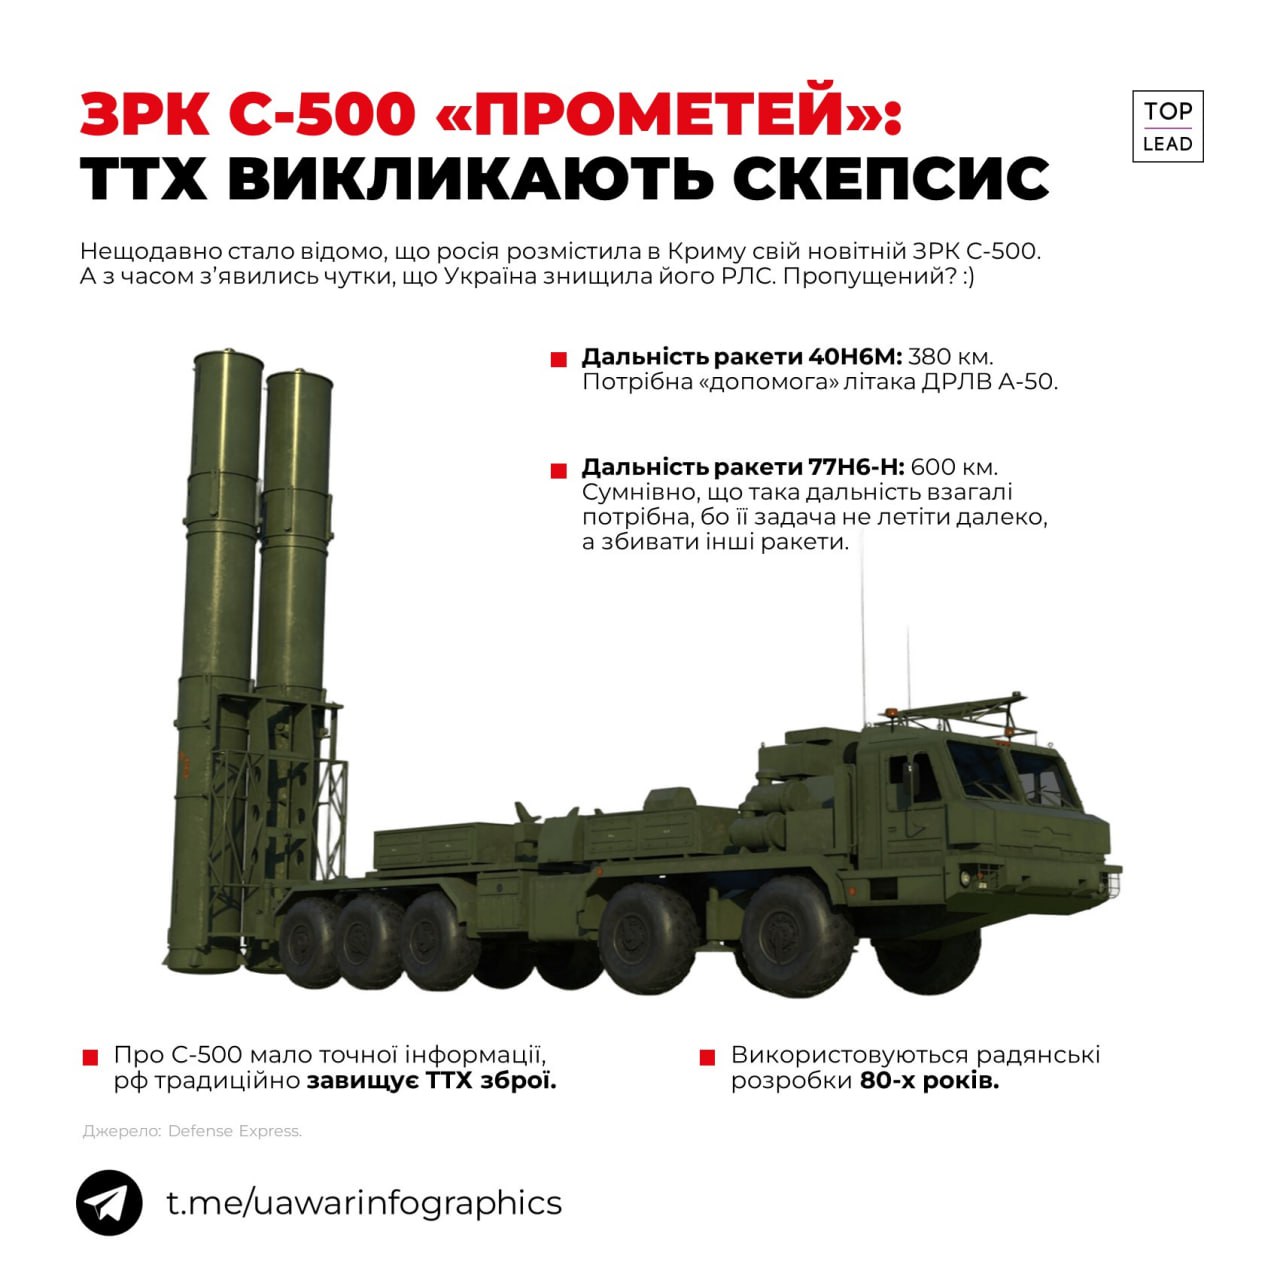 Таємнича С-500 — система ППО, про яку мало відомо, але яку (ніби) вразили в Криму в червні